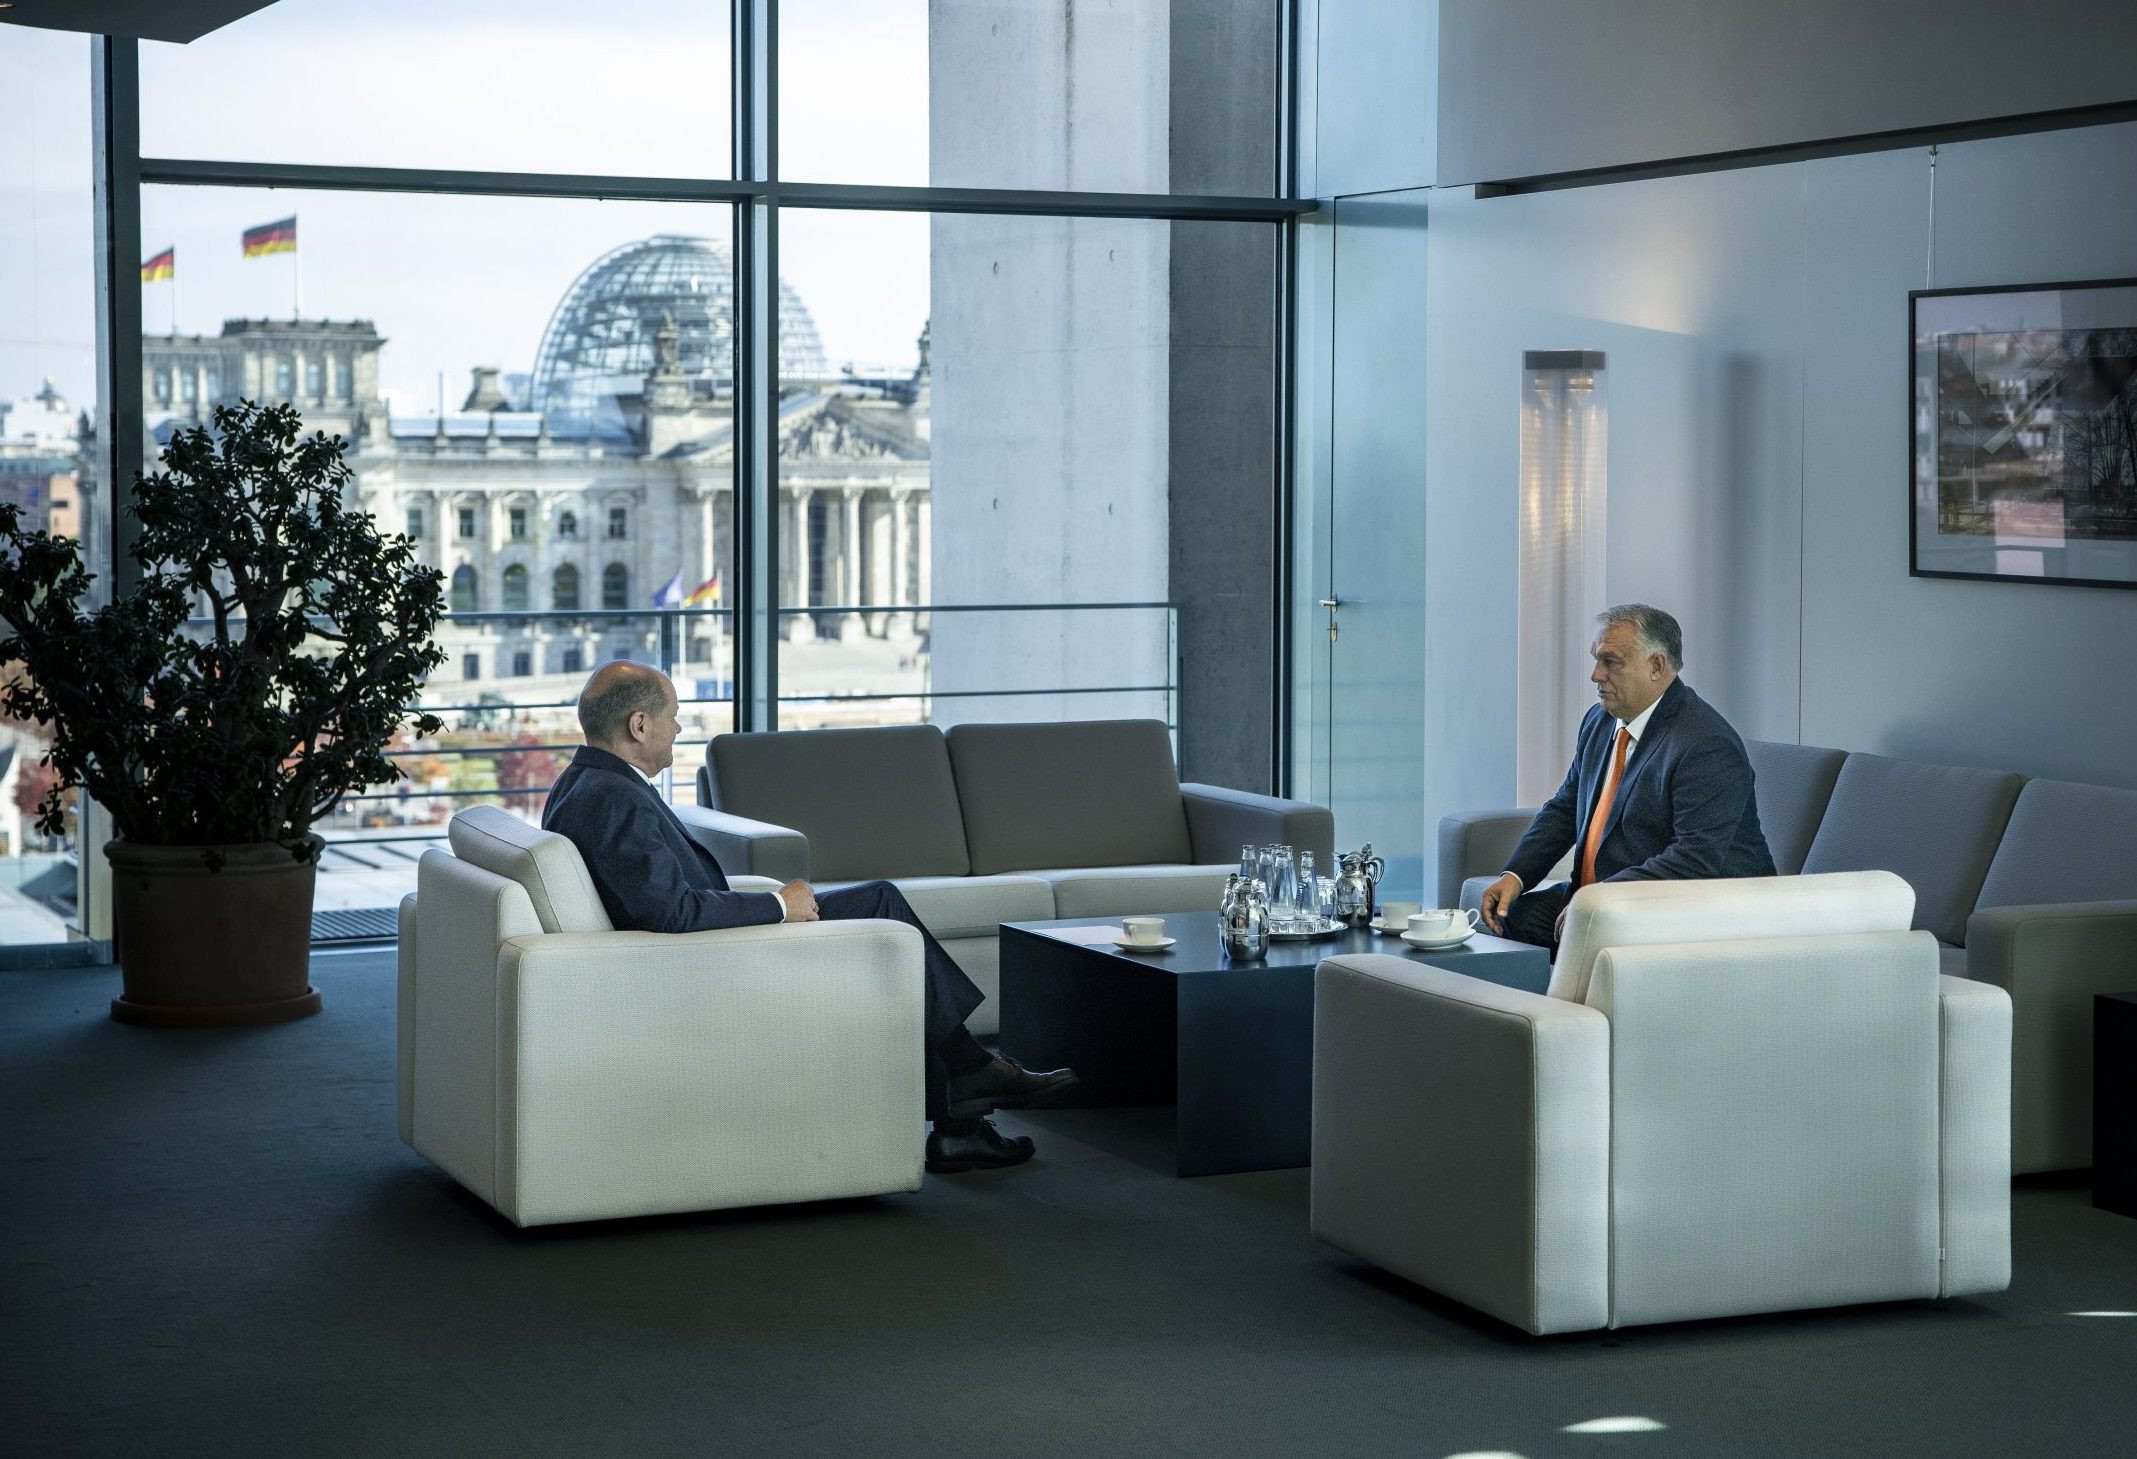 Die ungarisch-deutschen zwischenstaatlichen Beziehungen müssen gestärkt werden